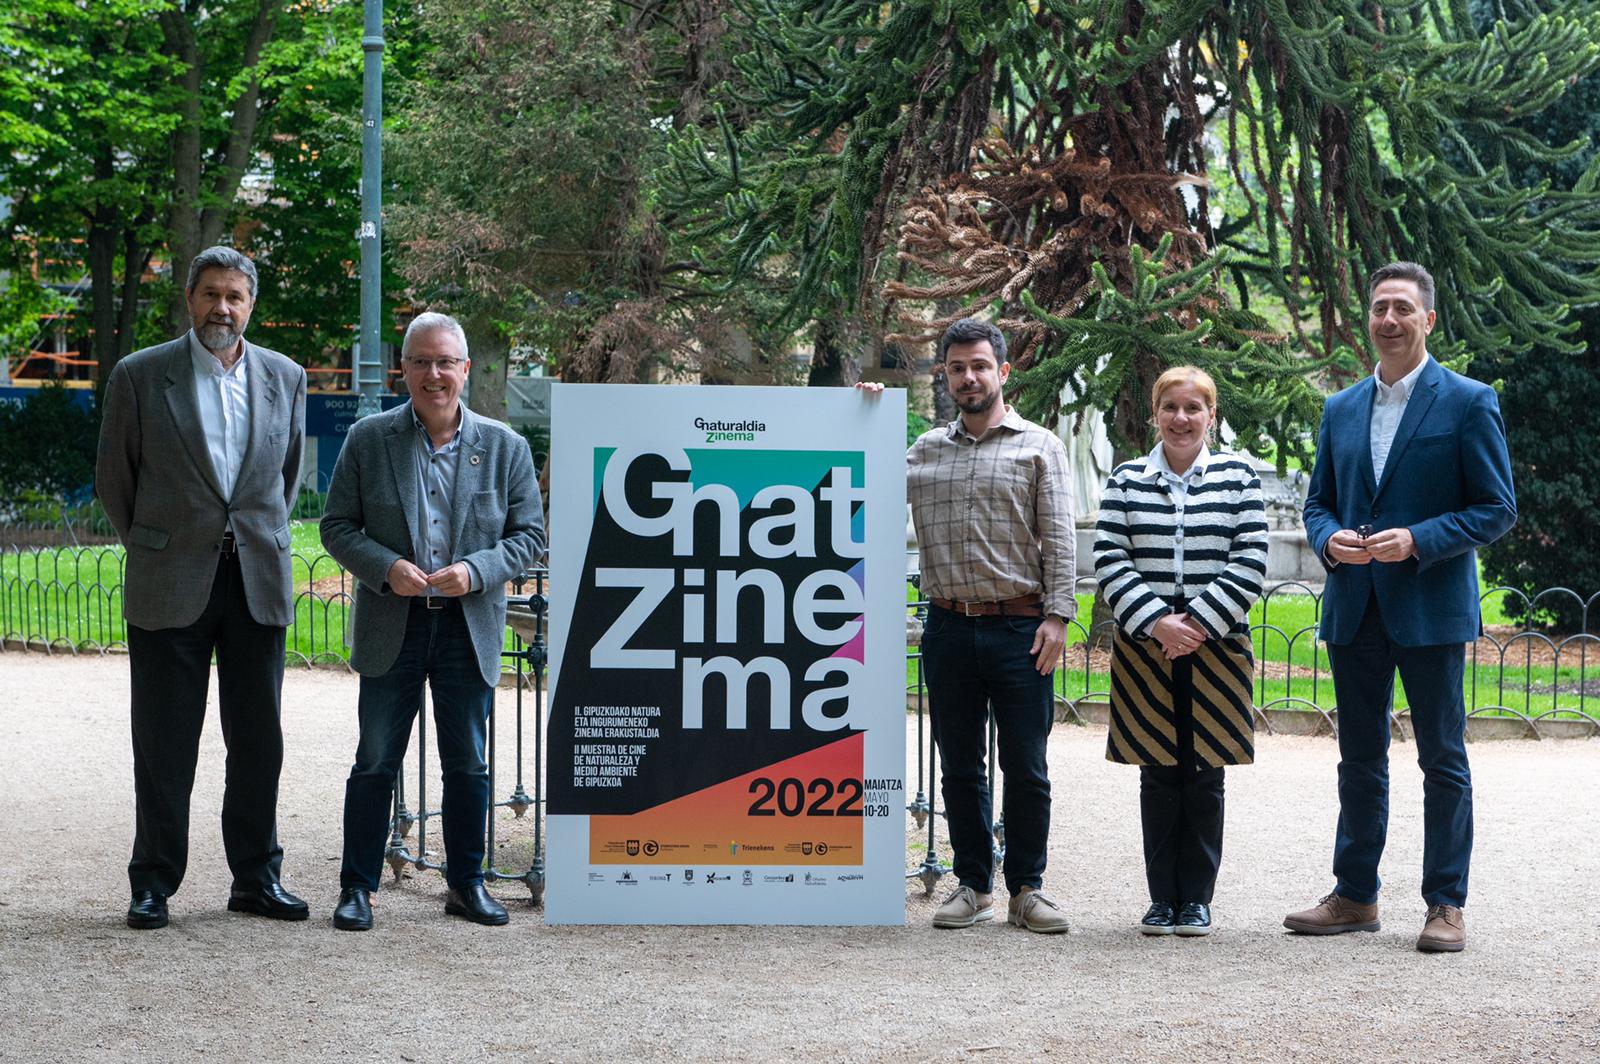 Gnat Zinema se amplía con más municipios, nuevas actividades y diferentes públicos